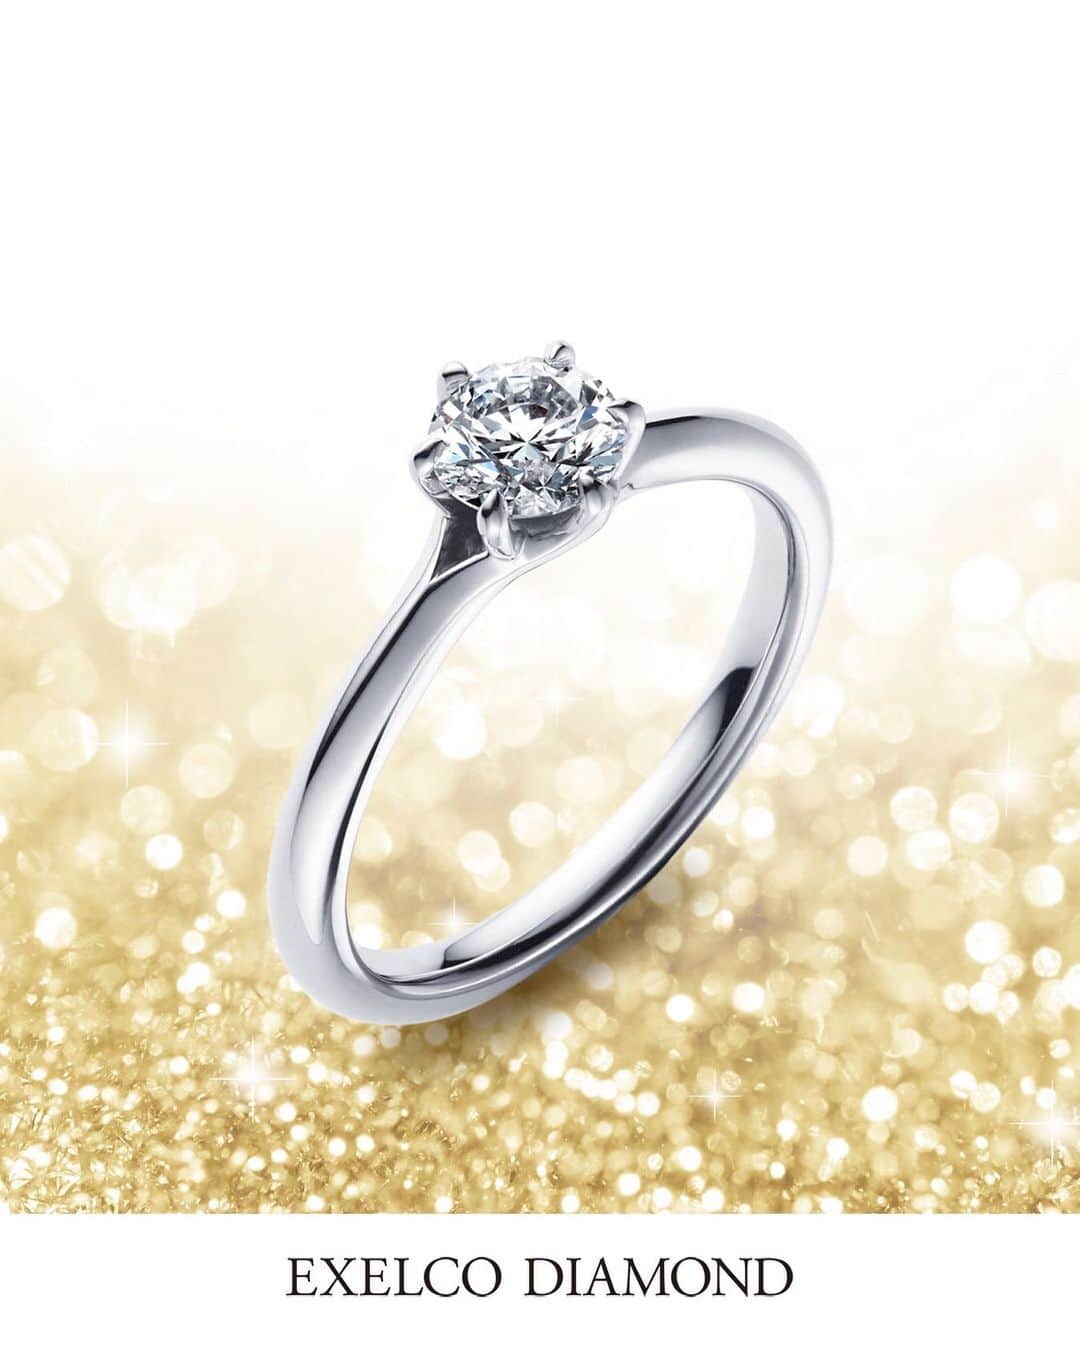 エクセルコ ダイヤモンド 婚約指輪♔結婚指輪のインスタグラム：「. アイディアルラウンドブリリアント カット💎100周年 . 今年は、4代目マーセル・トルコウスキーが、 〝アイディアルラウンドブリリアントカット〟を 発明してから100周年を迎えます。 . この節目を記念し、 ダイヤモンドが輝くための設計を施したデザイン 〝Optique（オプティーク）〟 輝きの三要素 （ブリリアンス・スパークル・ファイヤー）を 最大限に引き立たせるため、 計算し尽くしたリング💍 薬指で最高峰の輝きをご堪能いただけます✨ . メンズマリッジリングには、 バケットカットのブラックダイヤモンド、 レディースにはラウンドカットの ダイヤモンドがさり気なく、輝きます。 . 100年続く本物の輝き 〝アイディアルラウンドブリリアントカット〟を、 ぜひ店頭でお愉しみください。 . 詳しくはこちら https://www.exelco.com/bridal_jewelry/setring/optique.php . 店舗一覧 東京本店/盛岡店/仙台店/新潟店/青山店/町田マルイ店/横浜店/みなとみらい店/大宮店/ 宇都宮店/高崎店/ららぽーと沼津店/静岡店/浜松店/金沢店/長野店/松本店/名古屋本店/大阪店/ 梅田店/京都店/神戸店/広島店/福岡店/ヒルトン福岡シーホーク店/小倉店/博多店/長崎ハマクロス411店/熊本店 . #exelcodiamond  #エクセルコダイヤモンド」